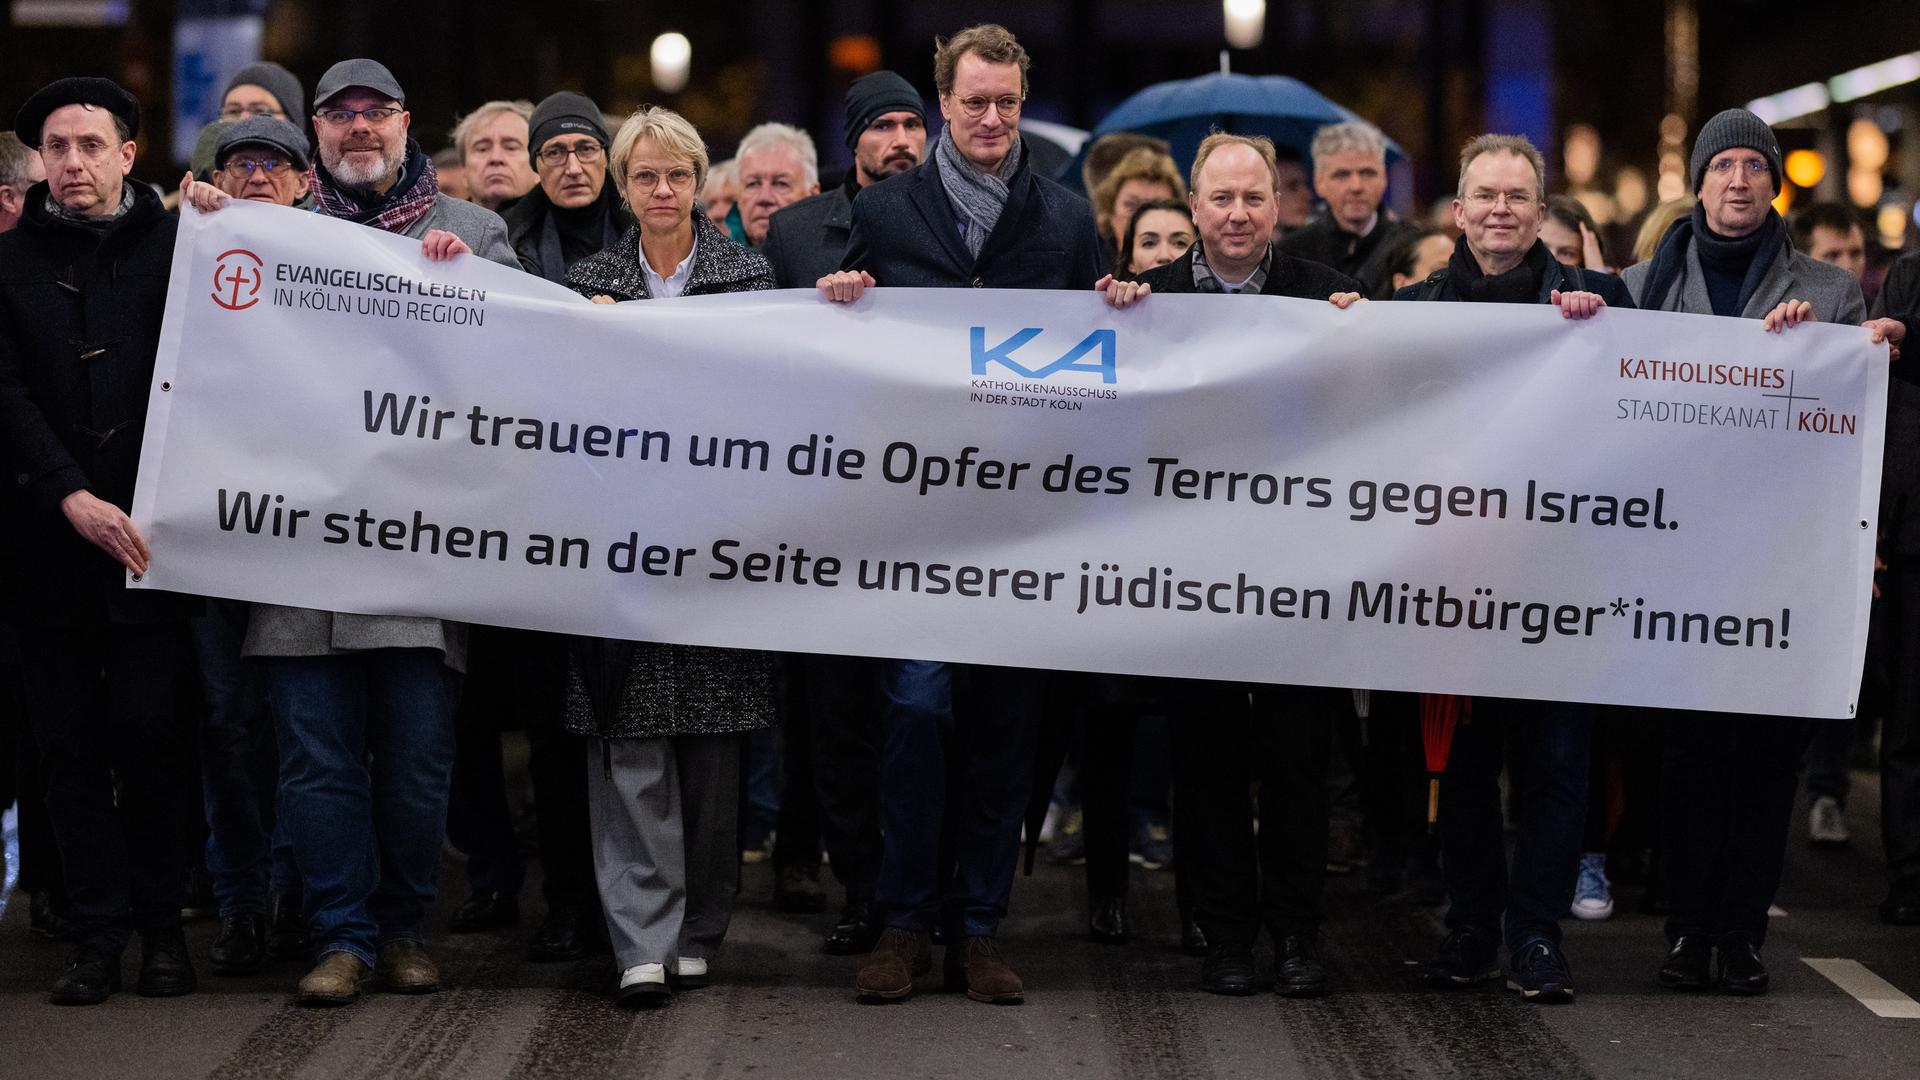 Nordrhein-Westfalens Ministerpräsident Hendrik Wüst (CDU) nimmt an einem Schweigegang für die Opfer des Terrors in Israel und aus Solidaritär für die jüdischen Mitbürger teil.